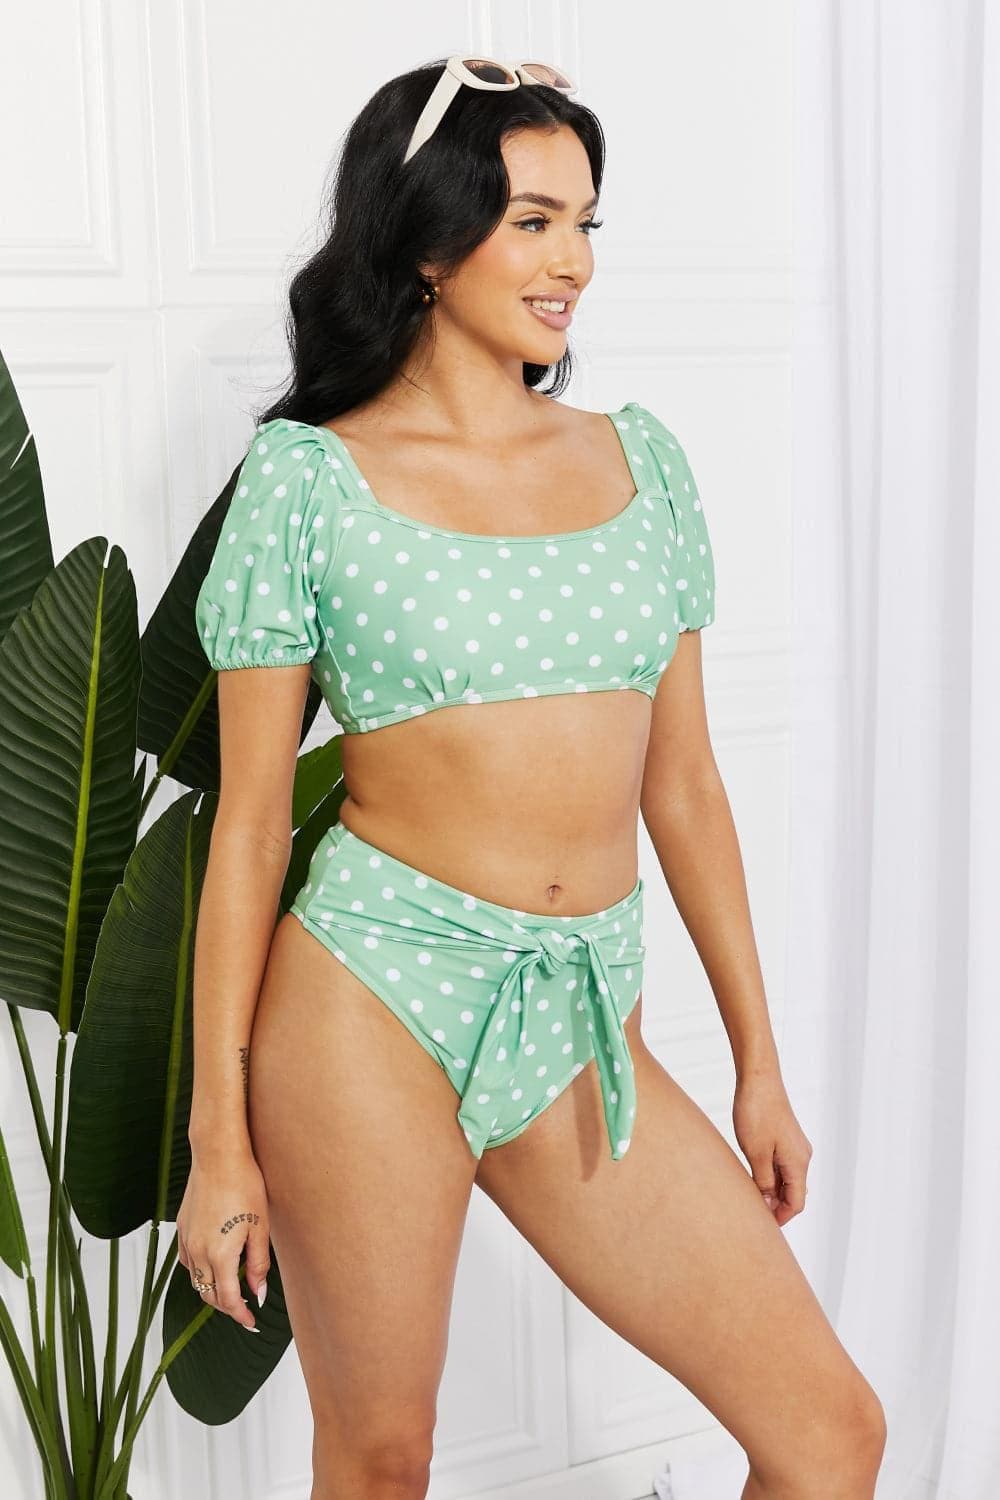 Marina West Swim Vacay Ready Puff Sleeve Bikini in Gum Leaf - SwagglyLife Home & Fashion